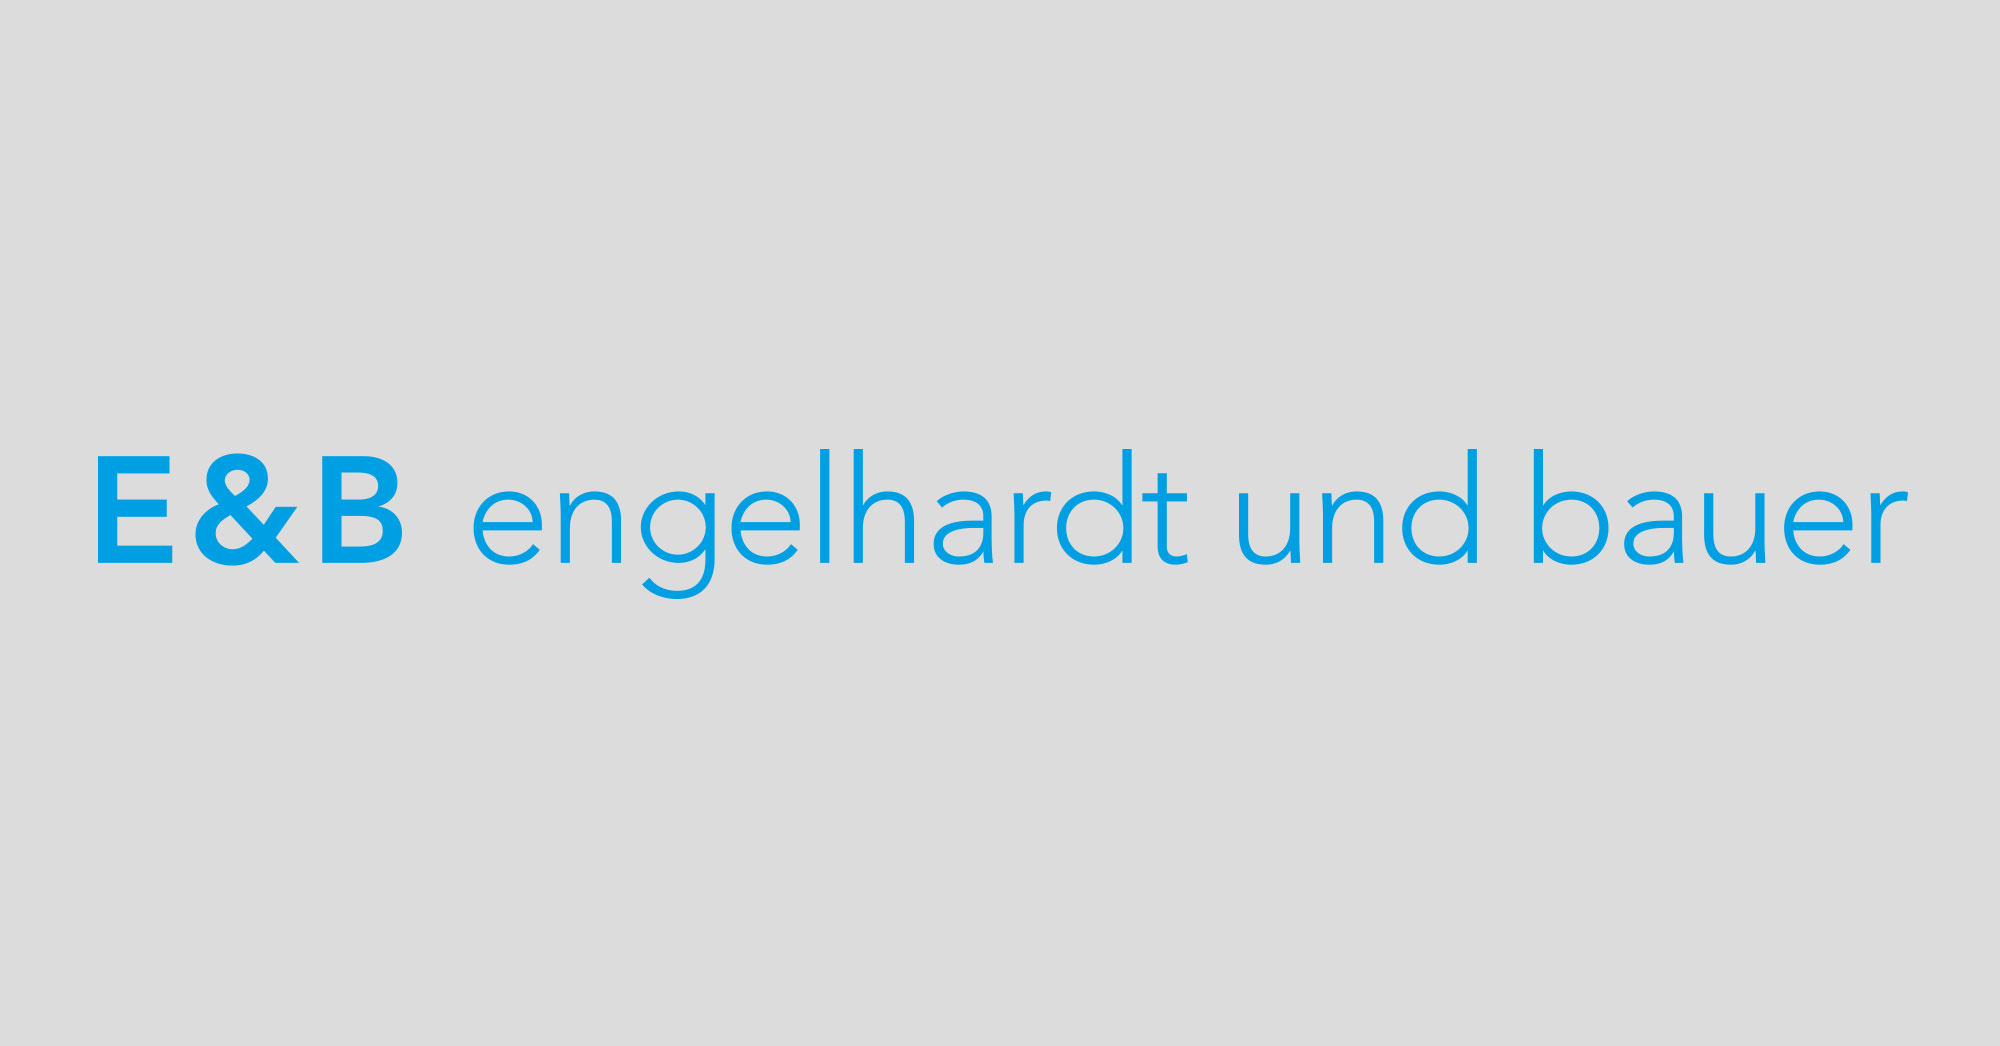 E & B engelhardt und bauer Druck und Verlag GmbH